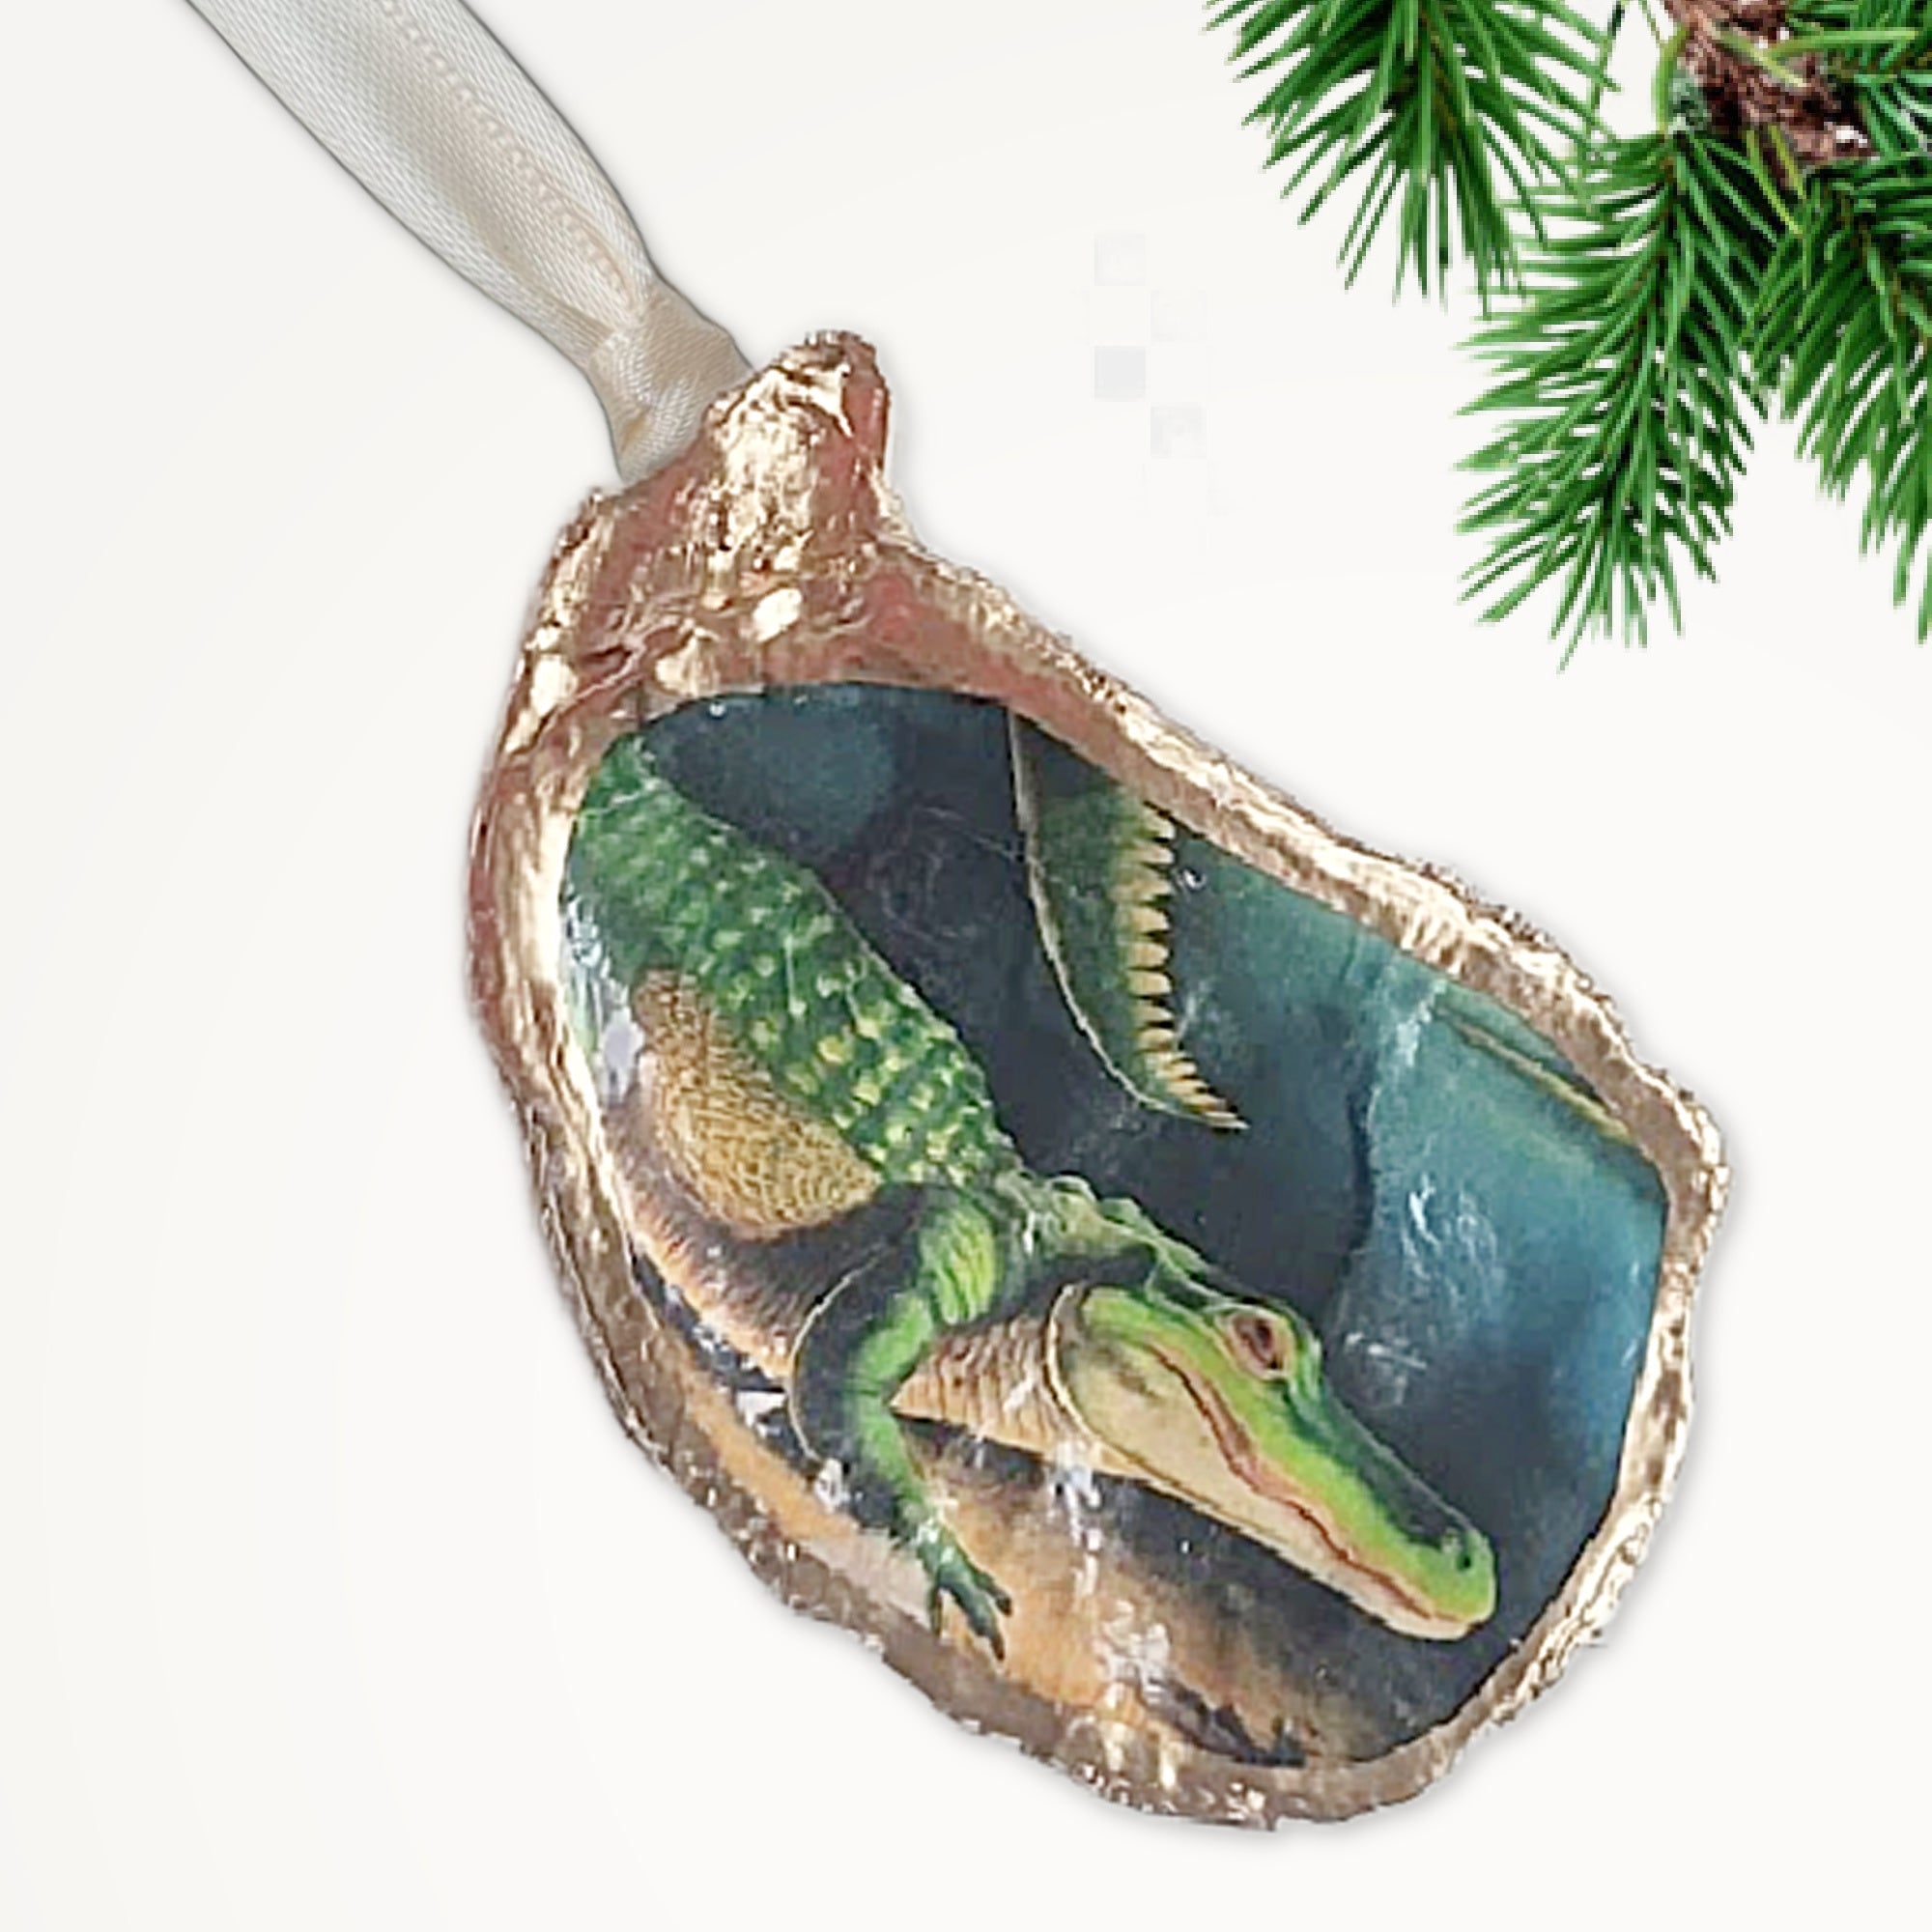 Alligator Bayou Ornament • Oyster Shell